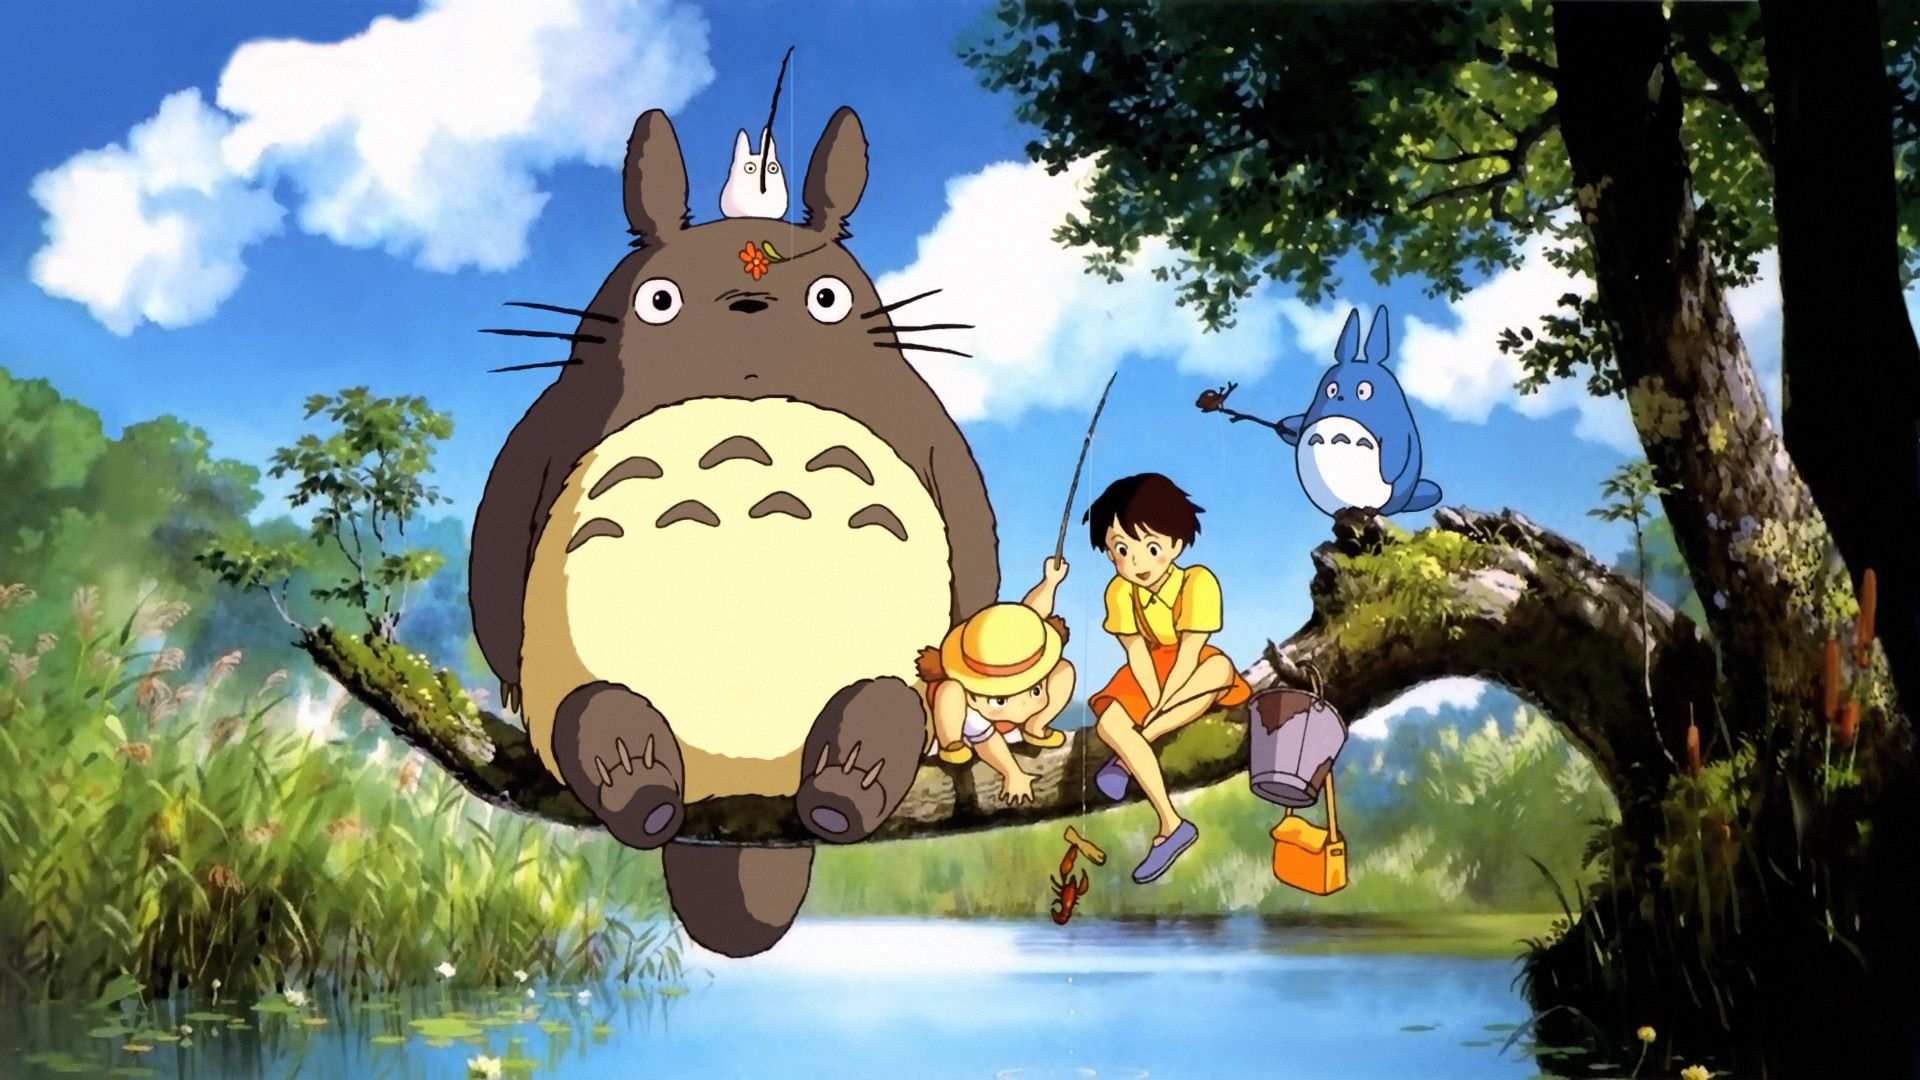 My-Neighbor-Totoro-1988